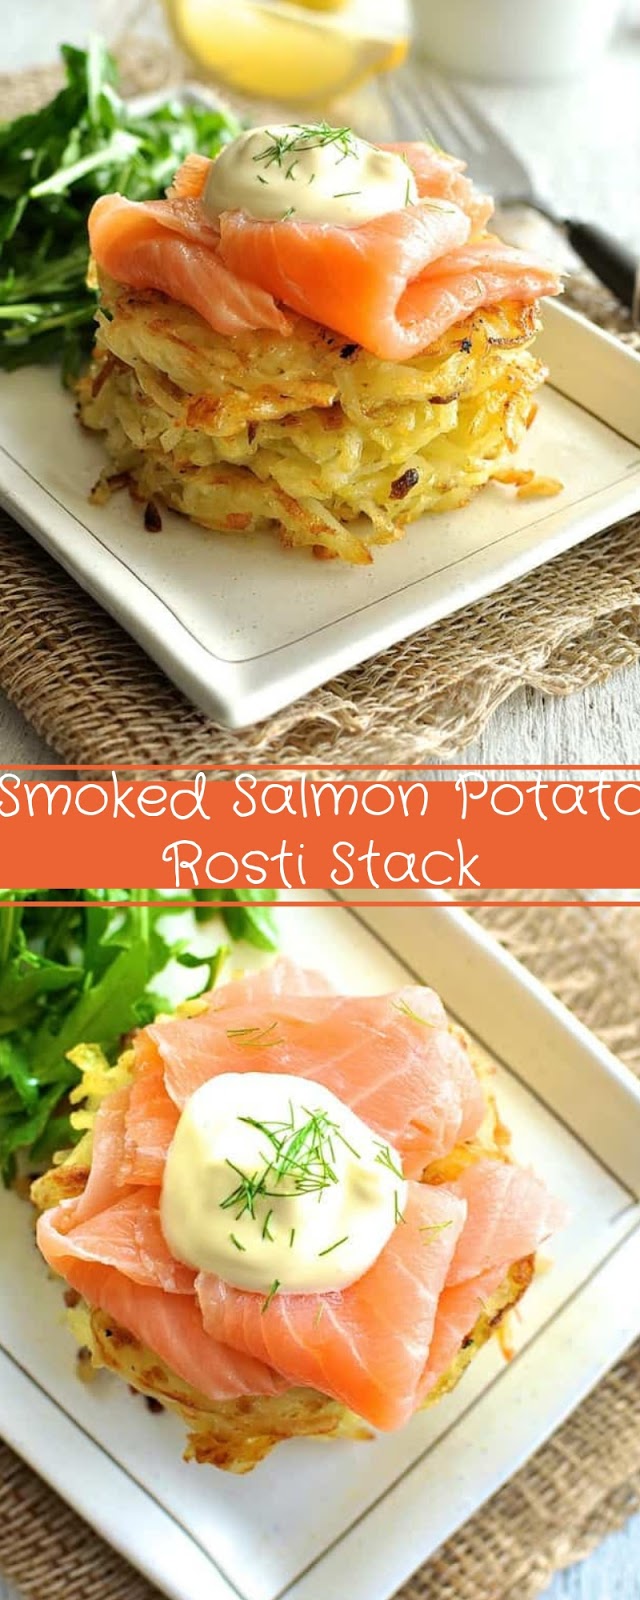 Smoked Salmon Potato Rosti Stack 